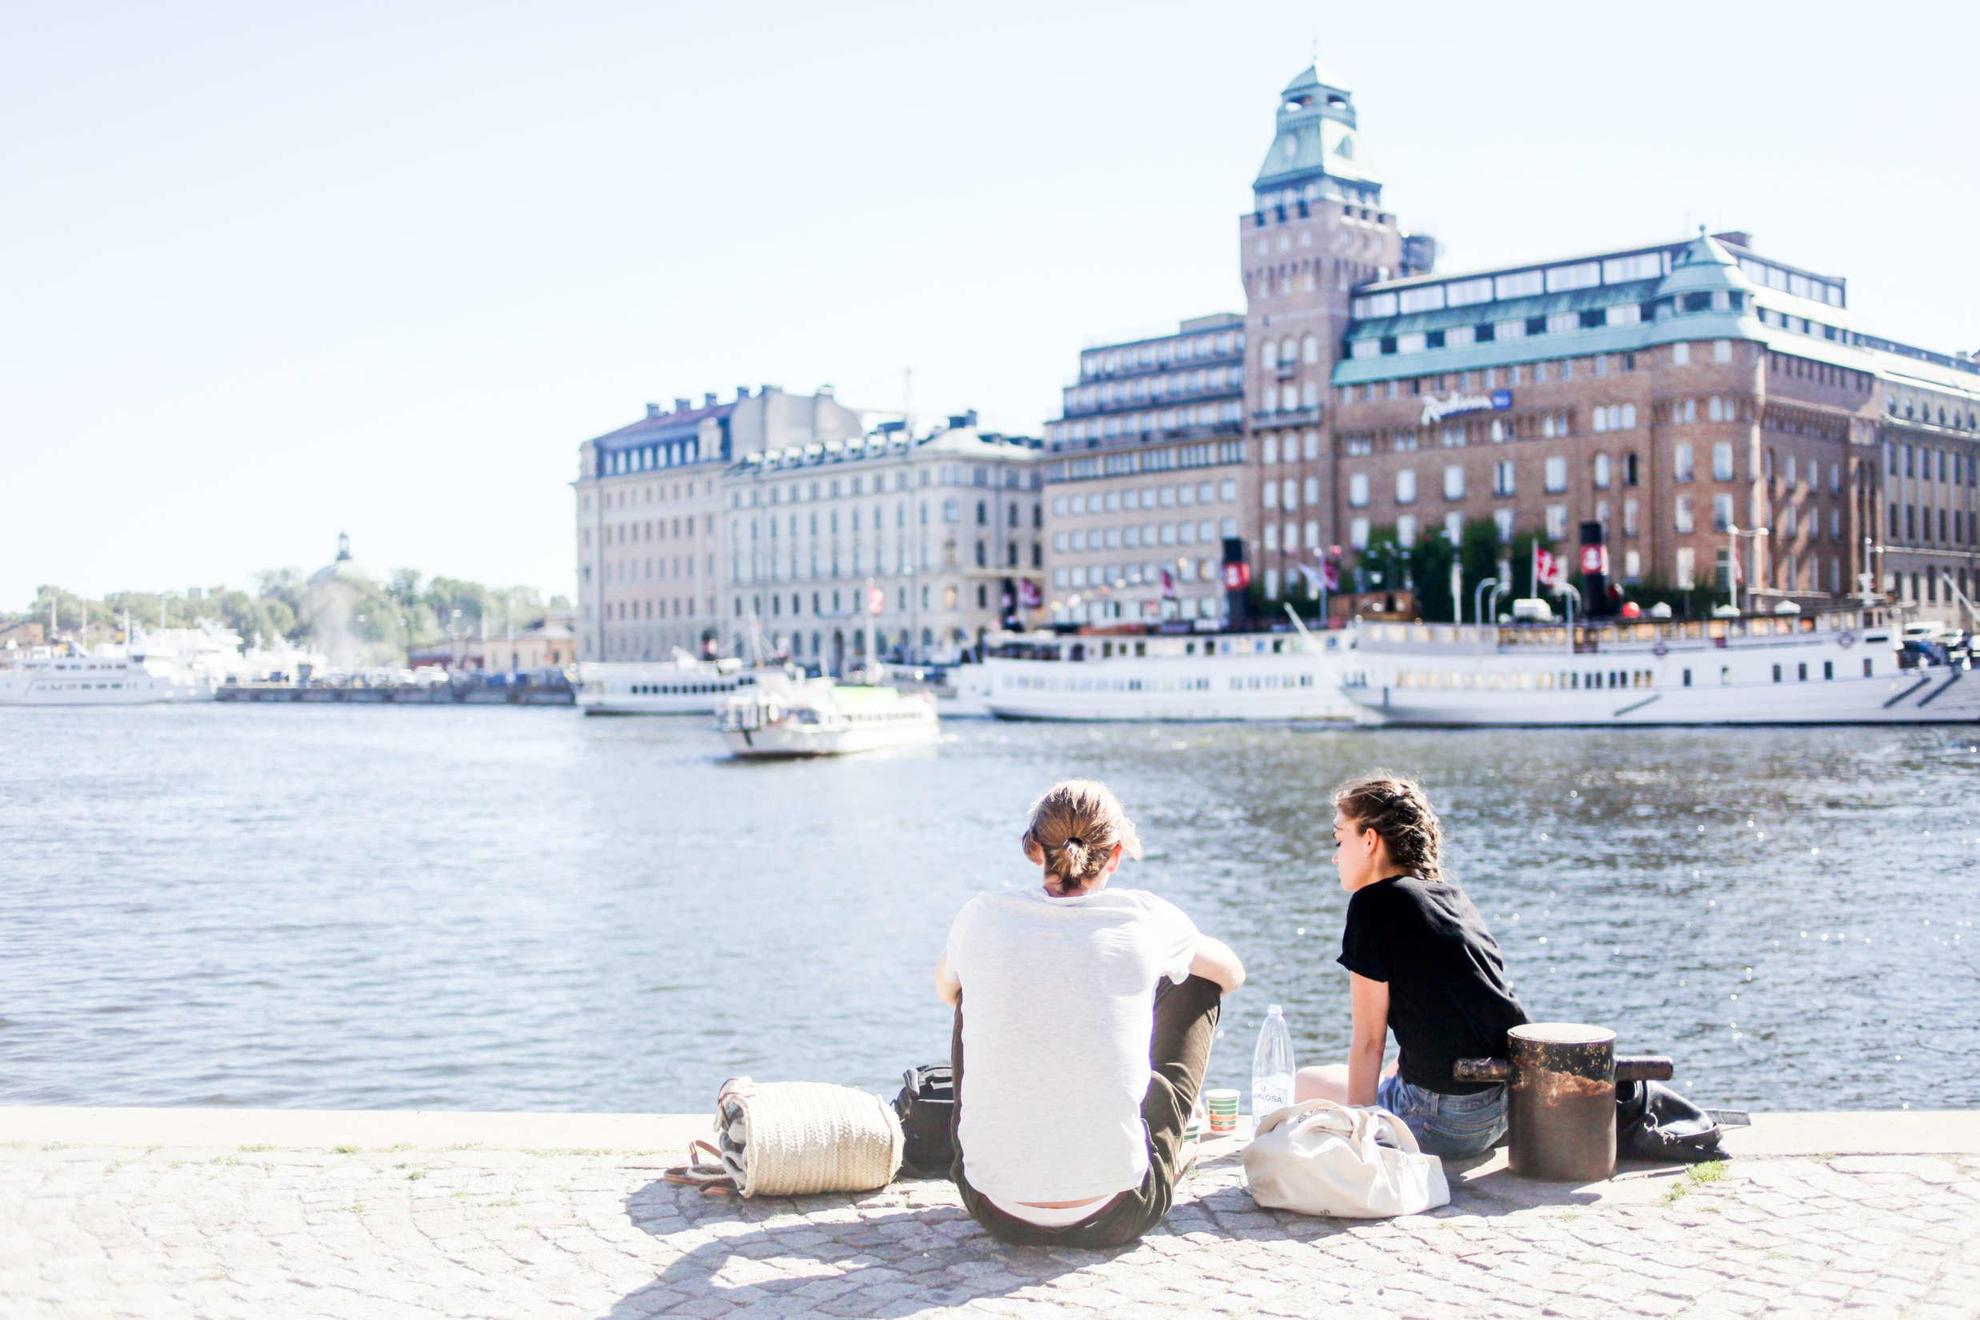 Nybrokajen harbour in Stockholm